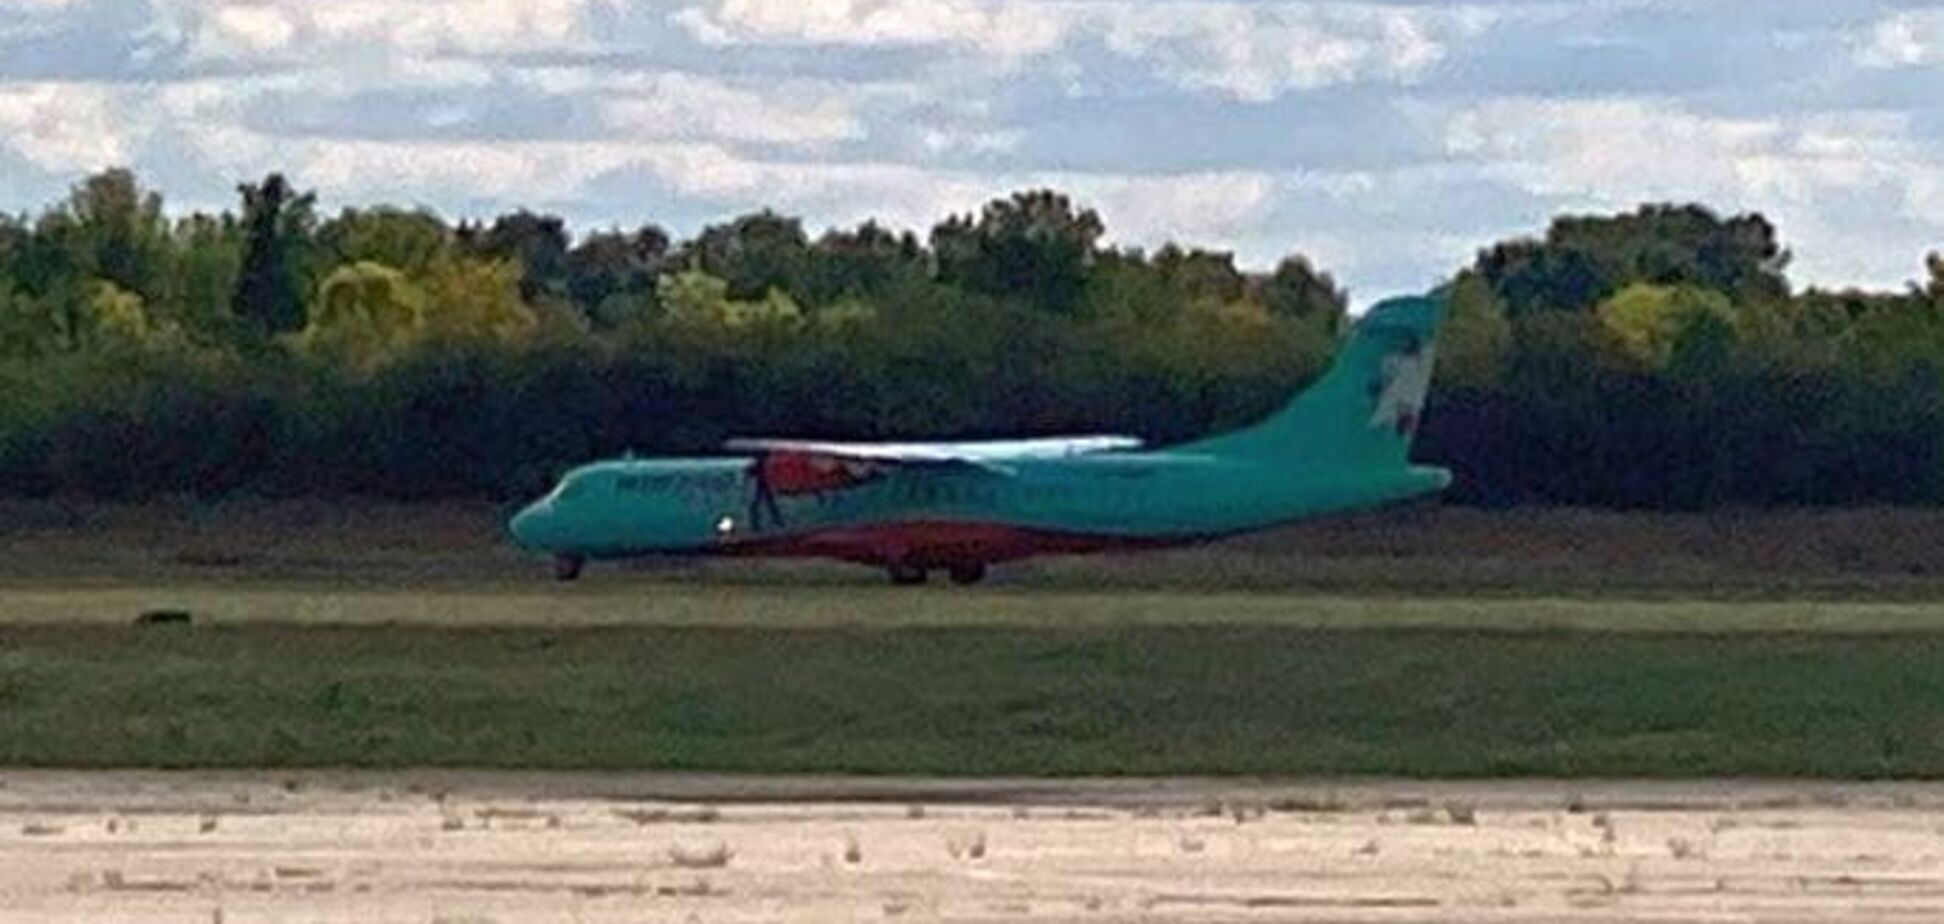 Нардепів від ОПЗЖ не випустили із літака в Полтаві: ЗМІ дізналися подробиці скандалу